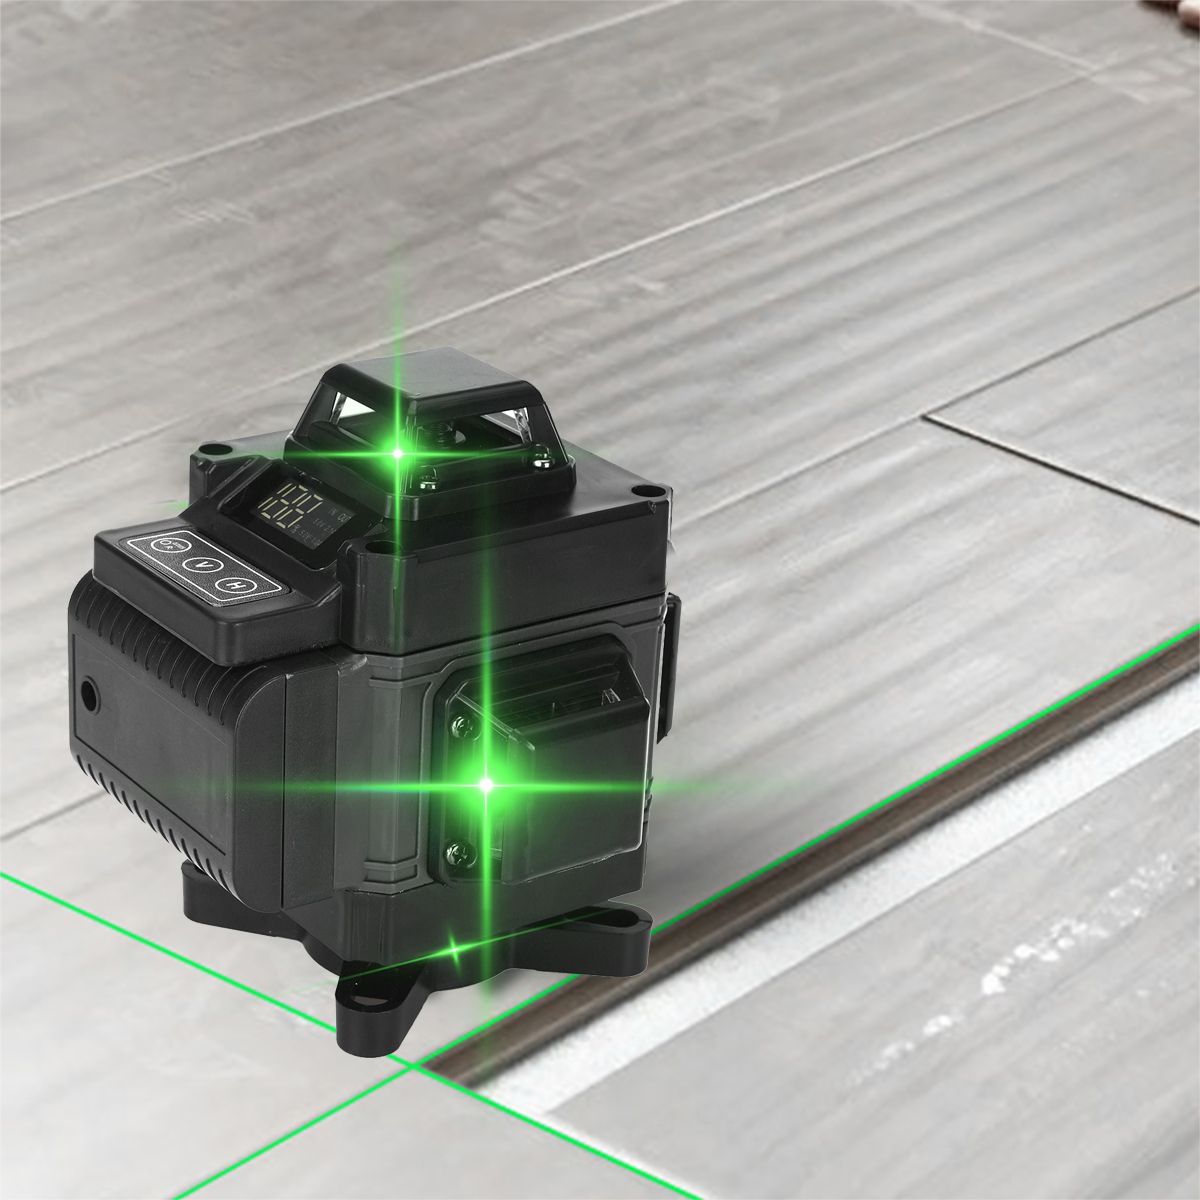 1216-Line-Green-Light-Laser-Level-Digital-Self-Leveling-360deg-Rotary-Measure-Tool-1717969